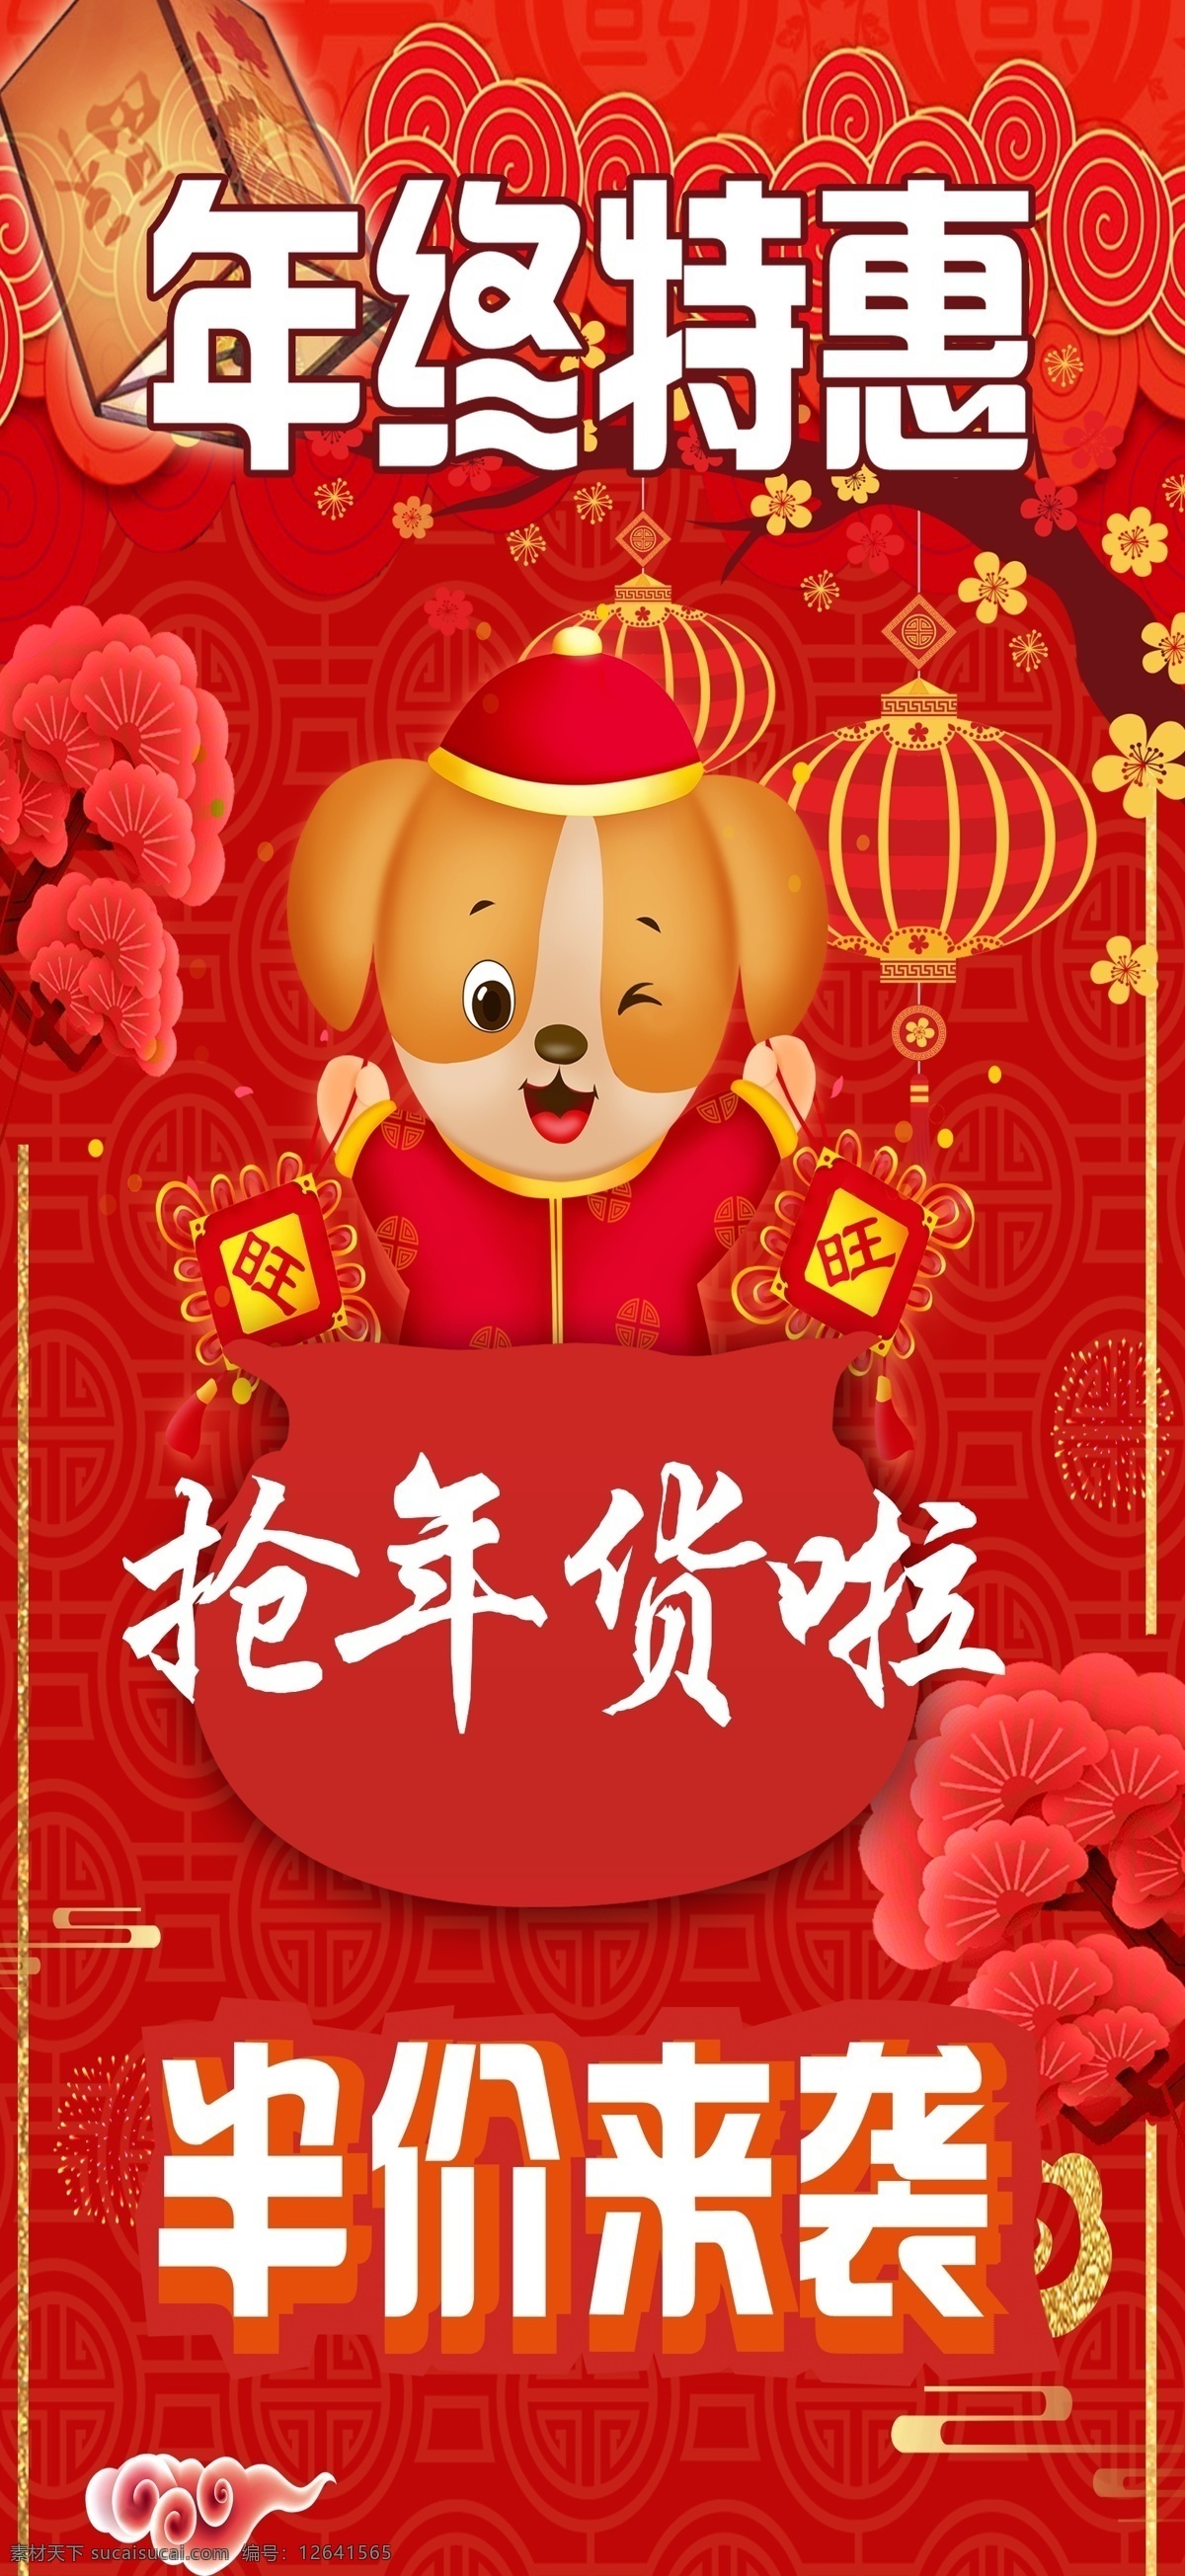 春节节日海报 半年 春节 灯笼 狗 红色 年货 特惠